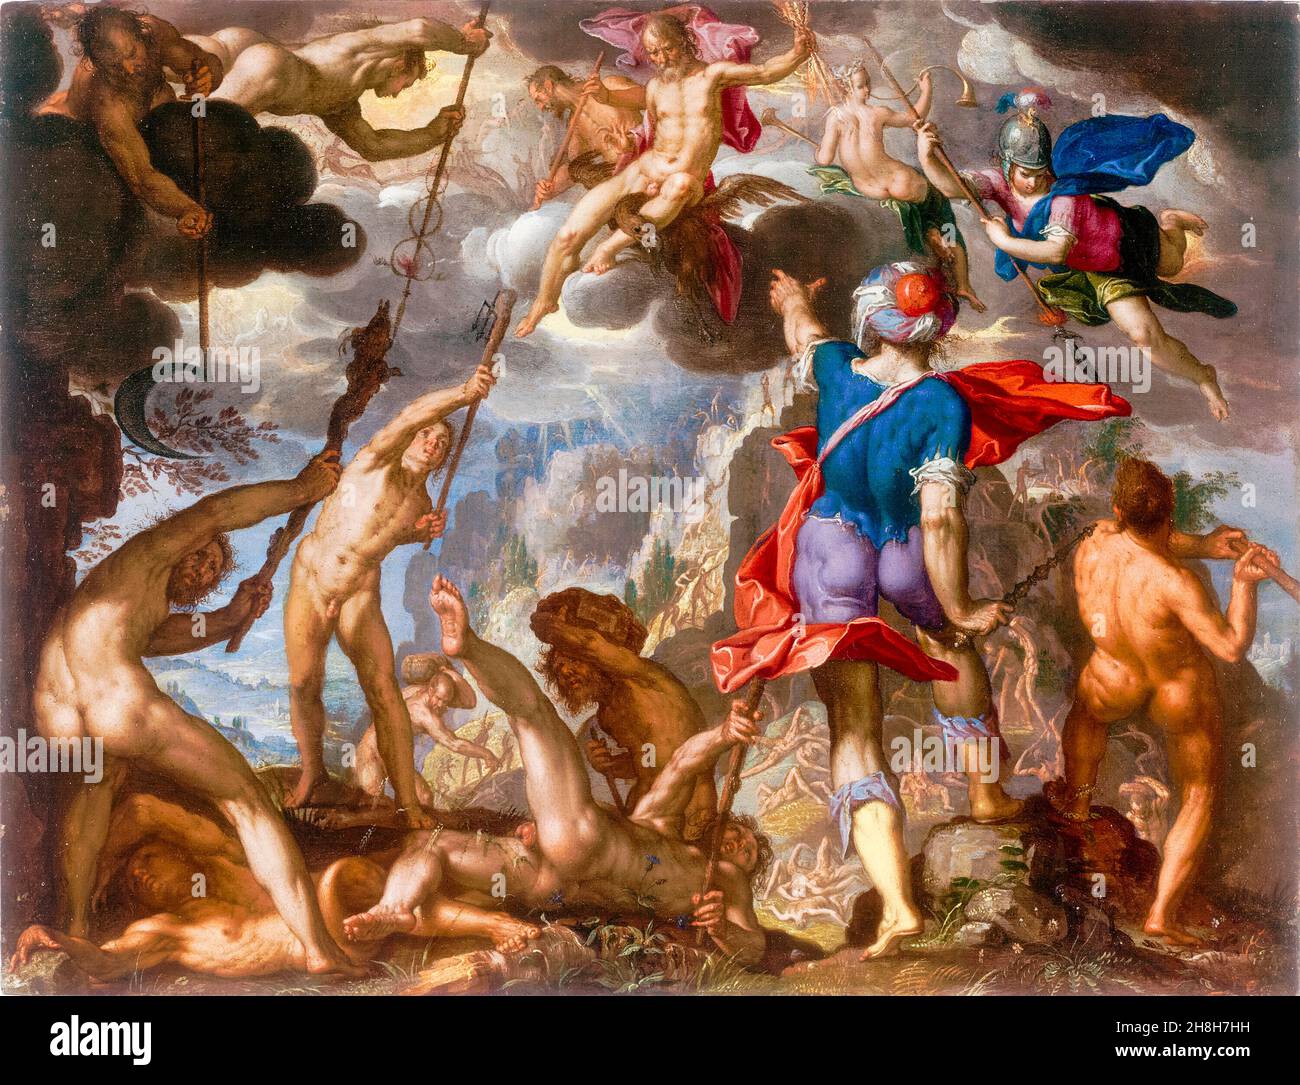 Joachim Wtewael peinture, la bataille entre les dieux et les géants, 1603-1613 Banque D'Images